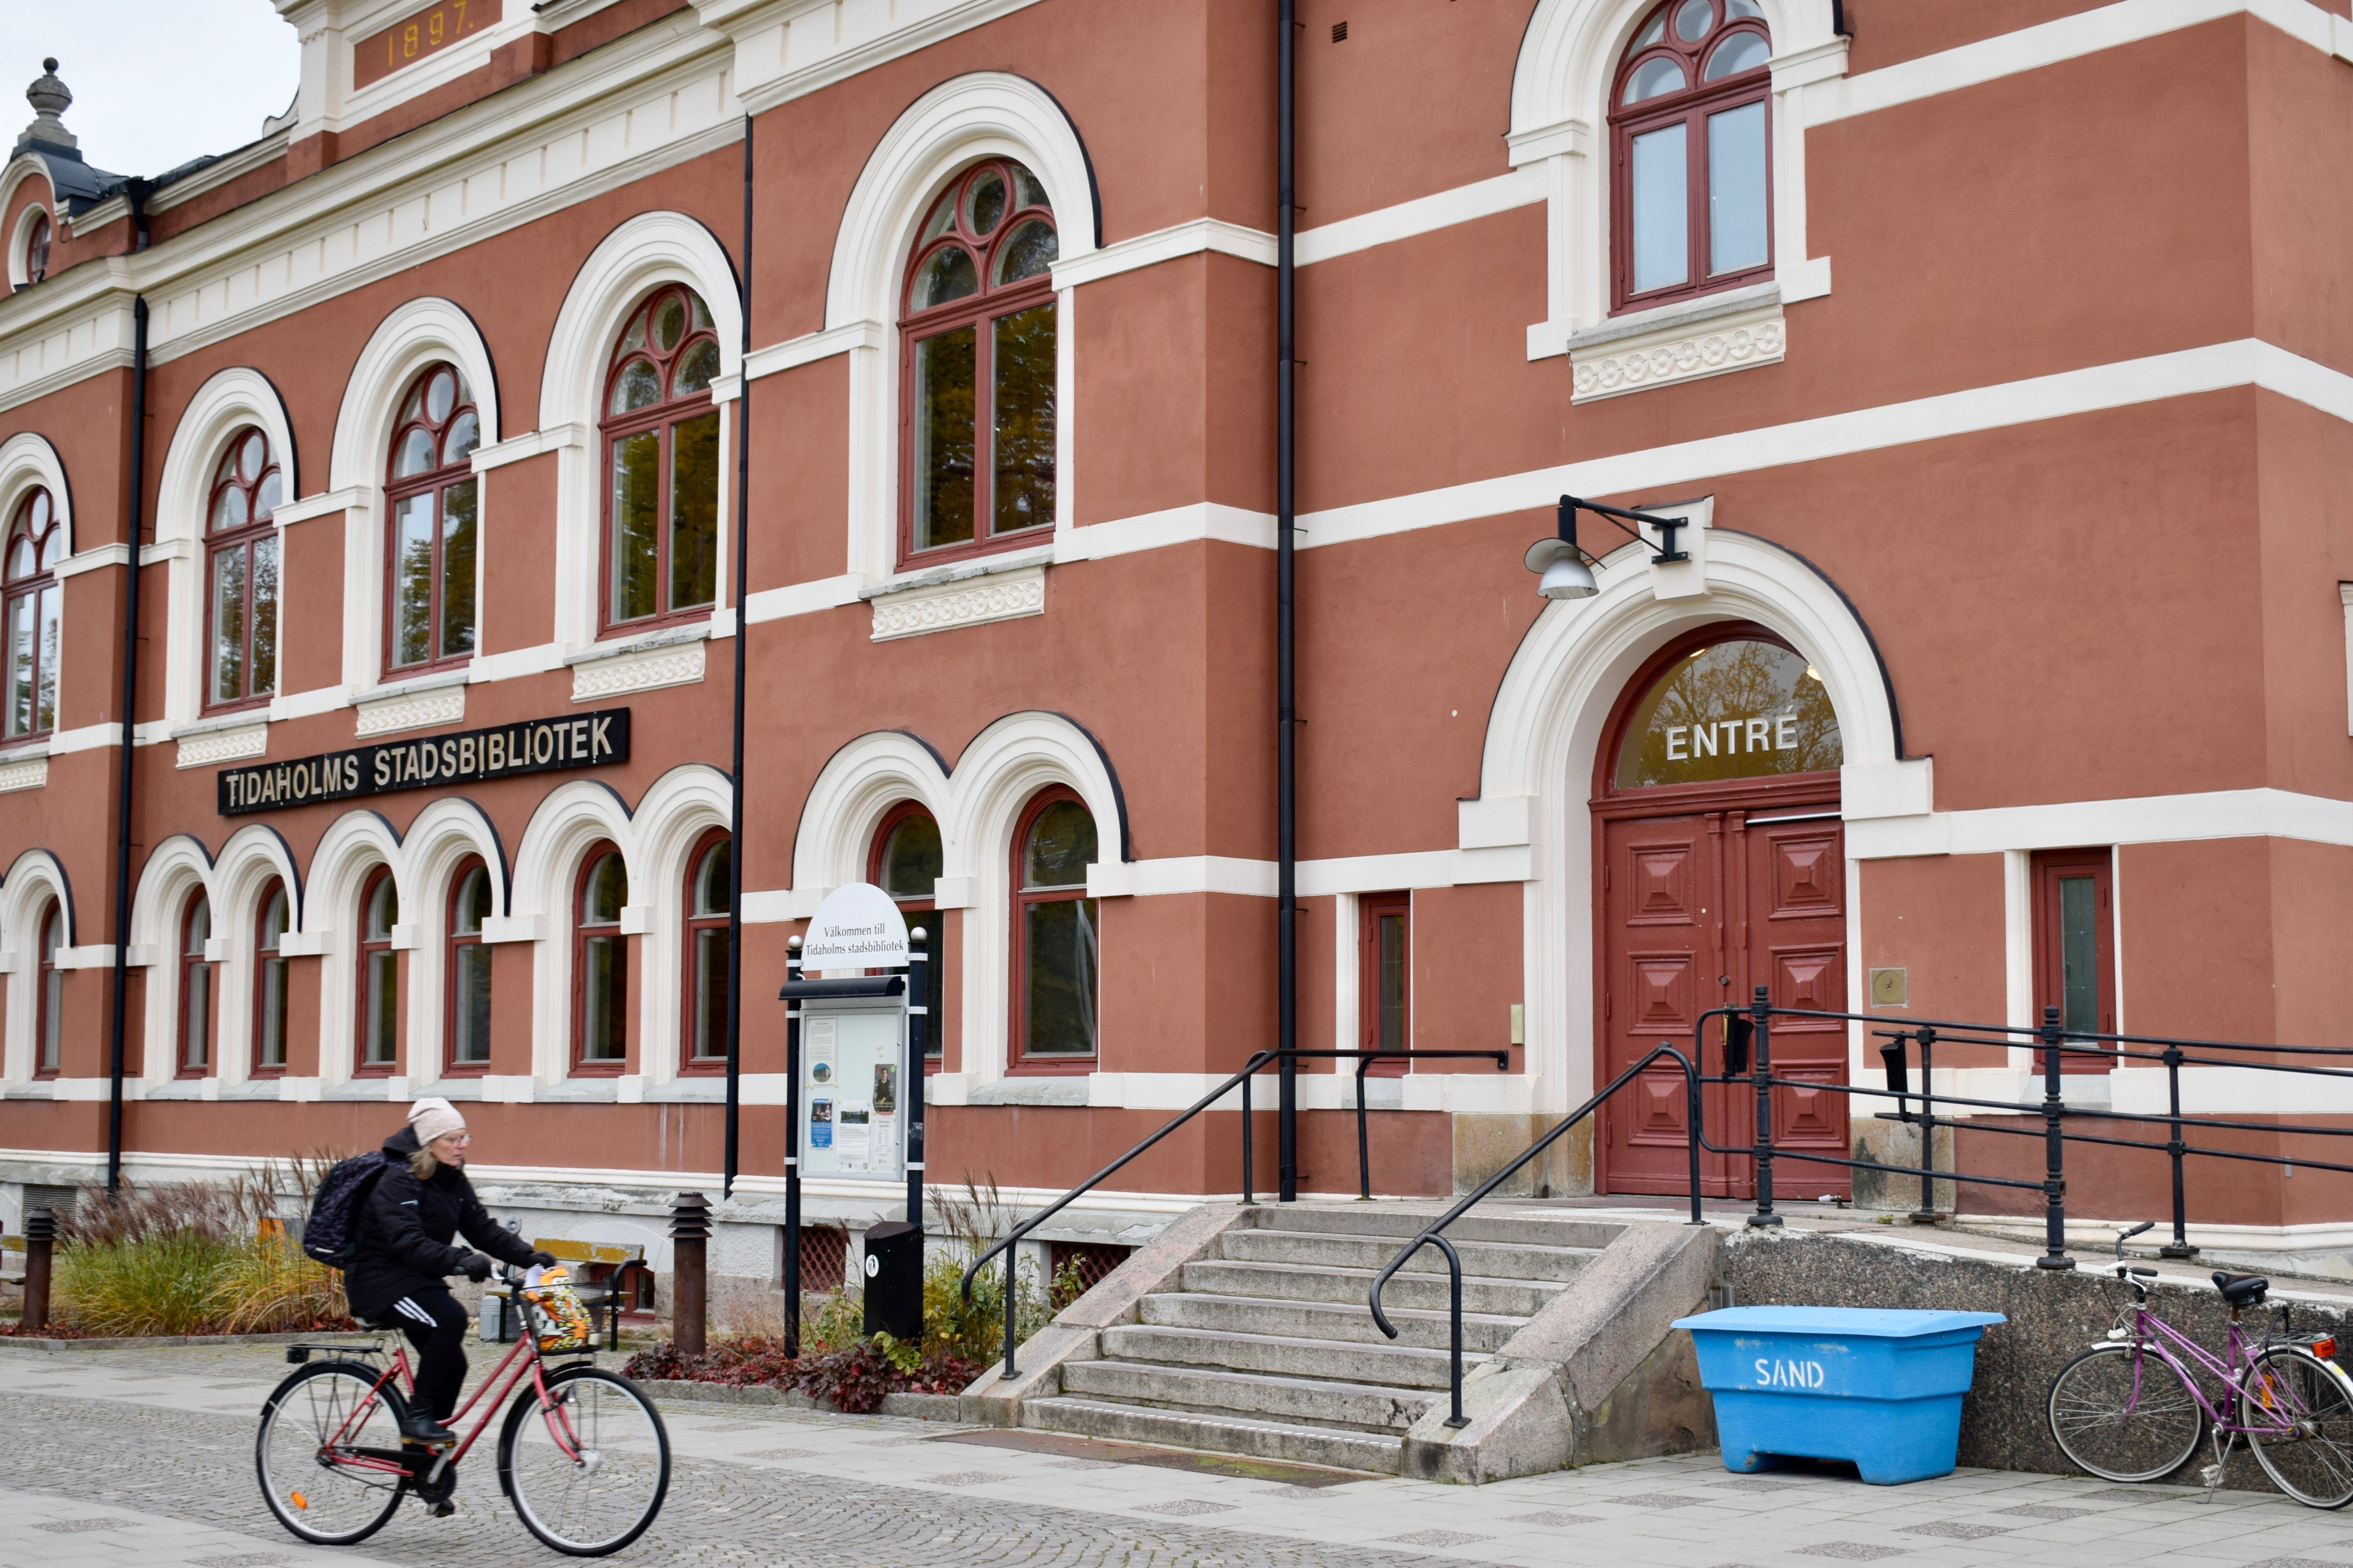 Tidaholms bibliotek, en röd byggnad med vita fönster som är formade som bågar längst upp. En kvinna cyklar förbi, på huset står skylten TIDAHOLMS BIBLIOTEK. 